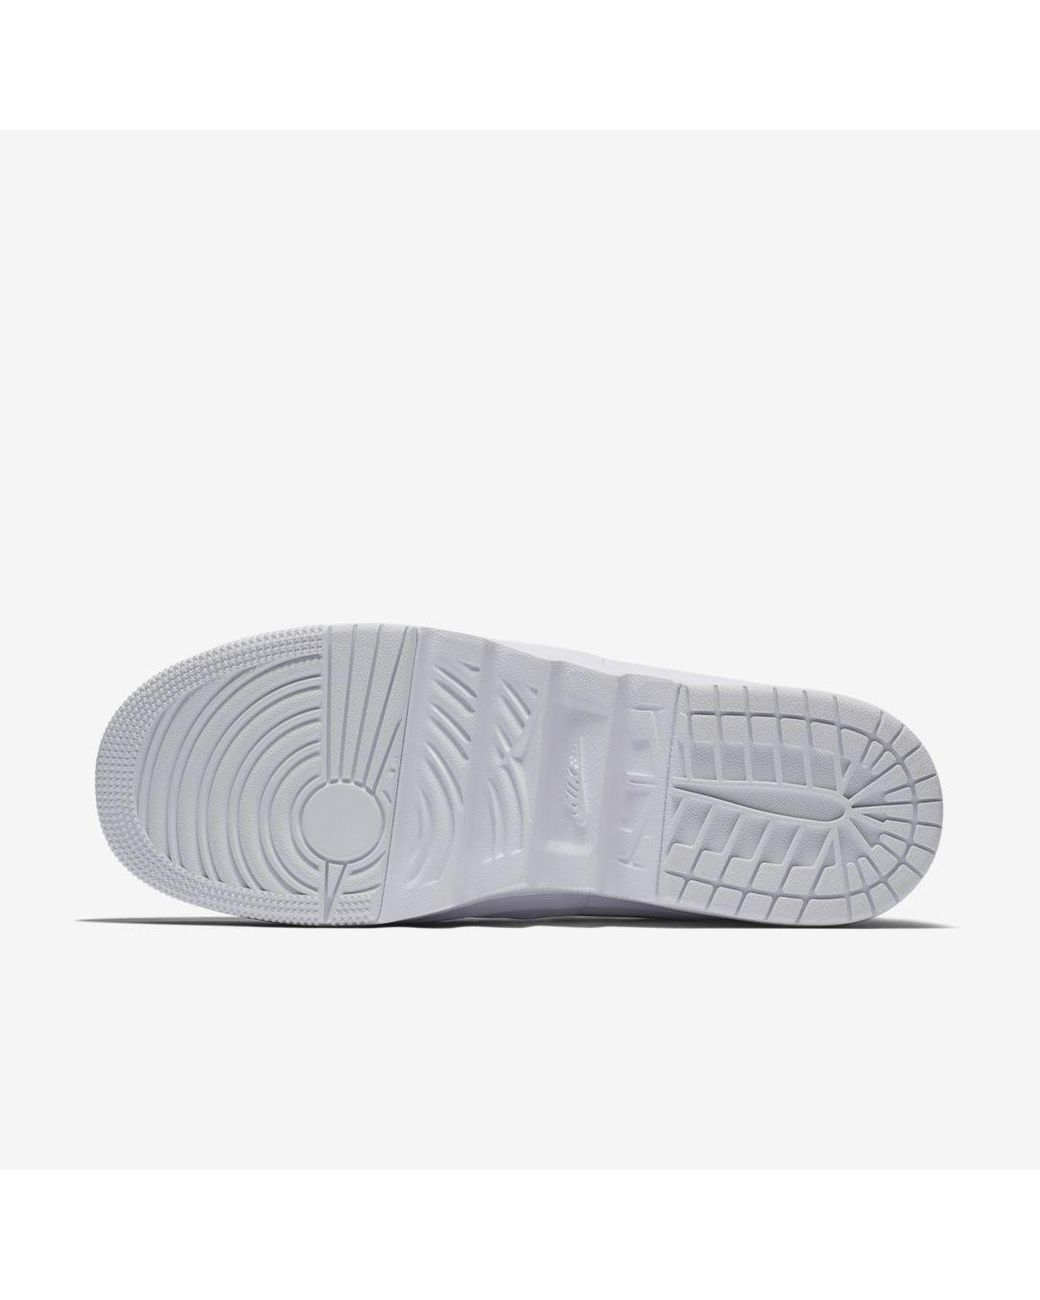 Nike Air Jordan 1 Jester Xx Low Shoe in White | Lyst